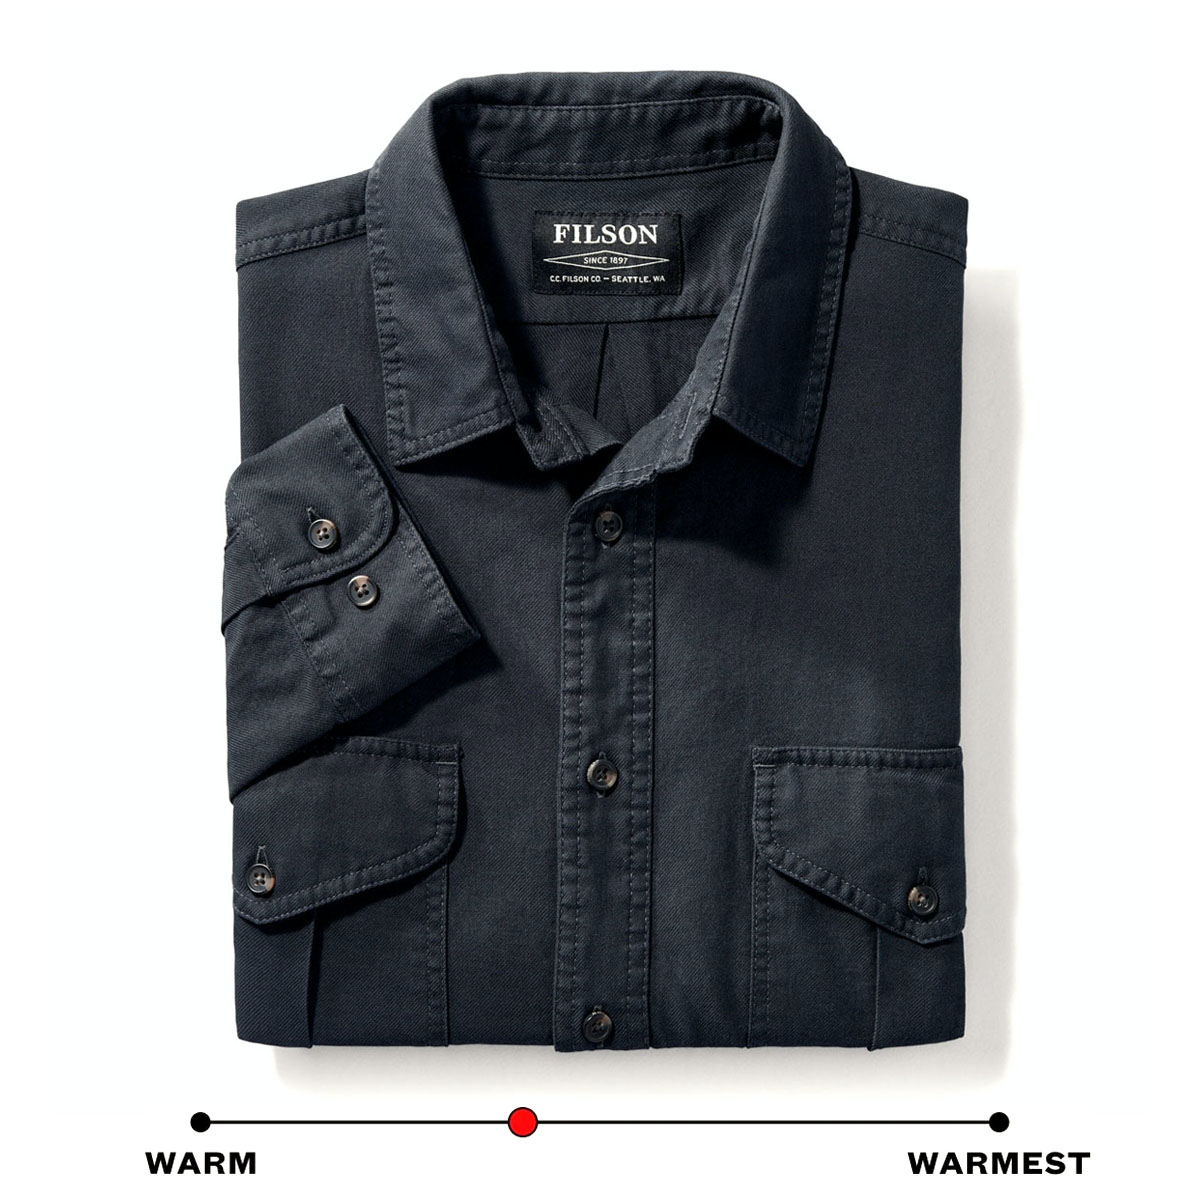 Filson Lightweight Alaskan Guide Shirt Midnight Navy, Shirt, geschnitten für Beweglichkeit an den Schultern